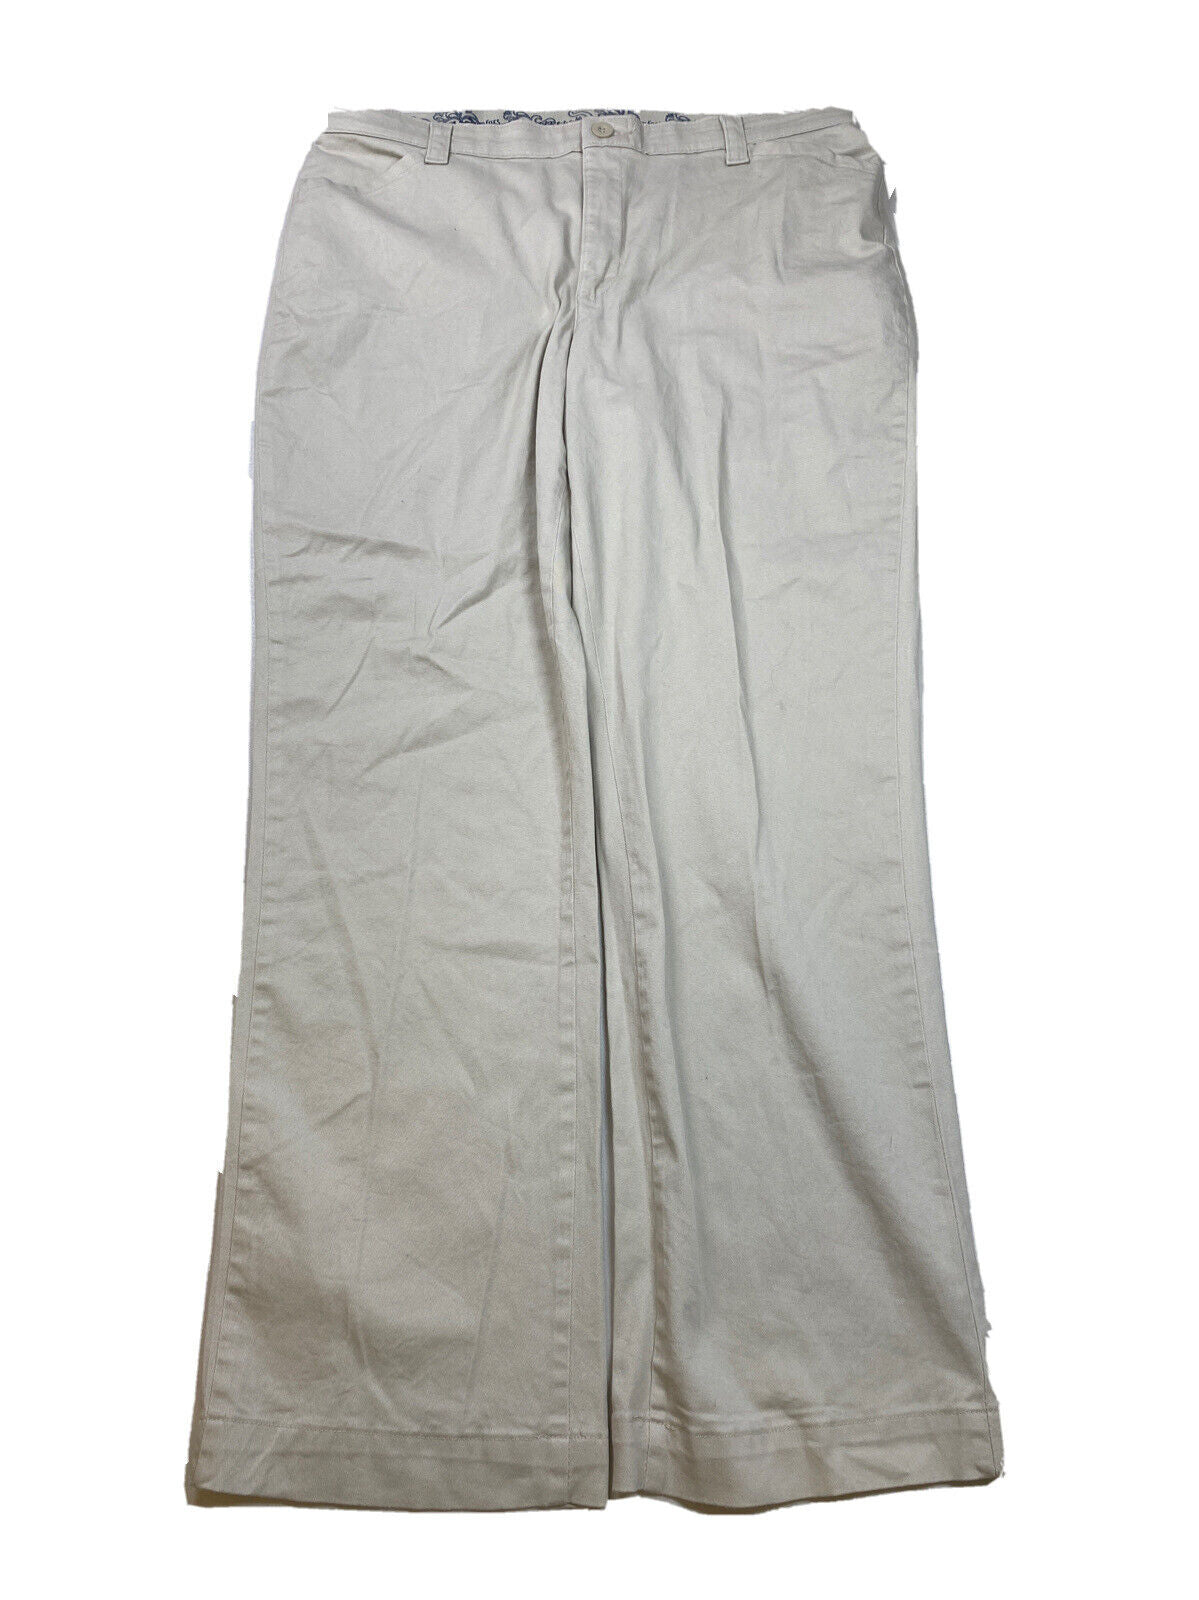 NUEVO Pantalón chino Lee con cintura elástica y ajuste cómodo en color beige para mujer - 18 M